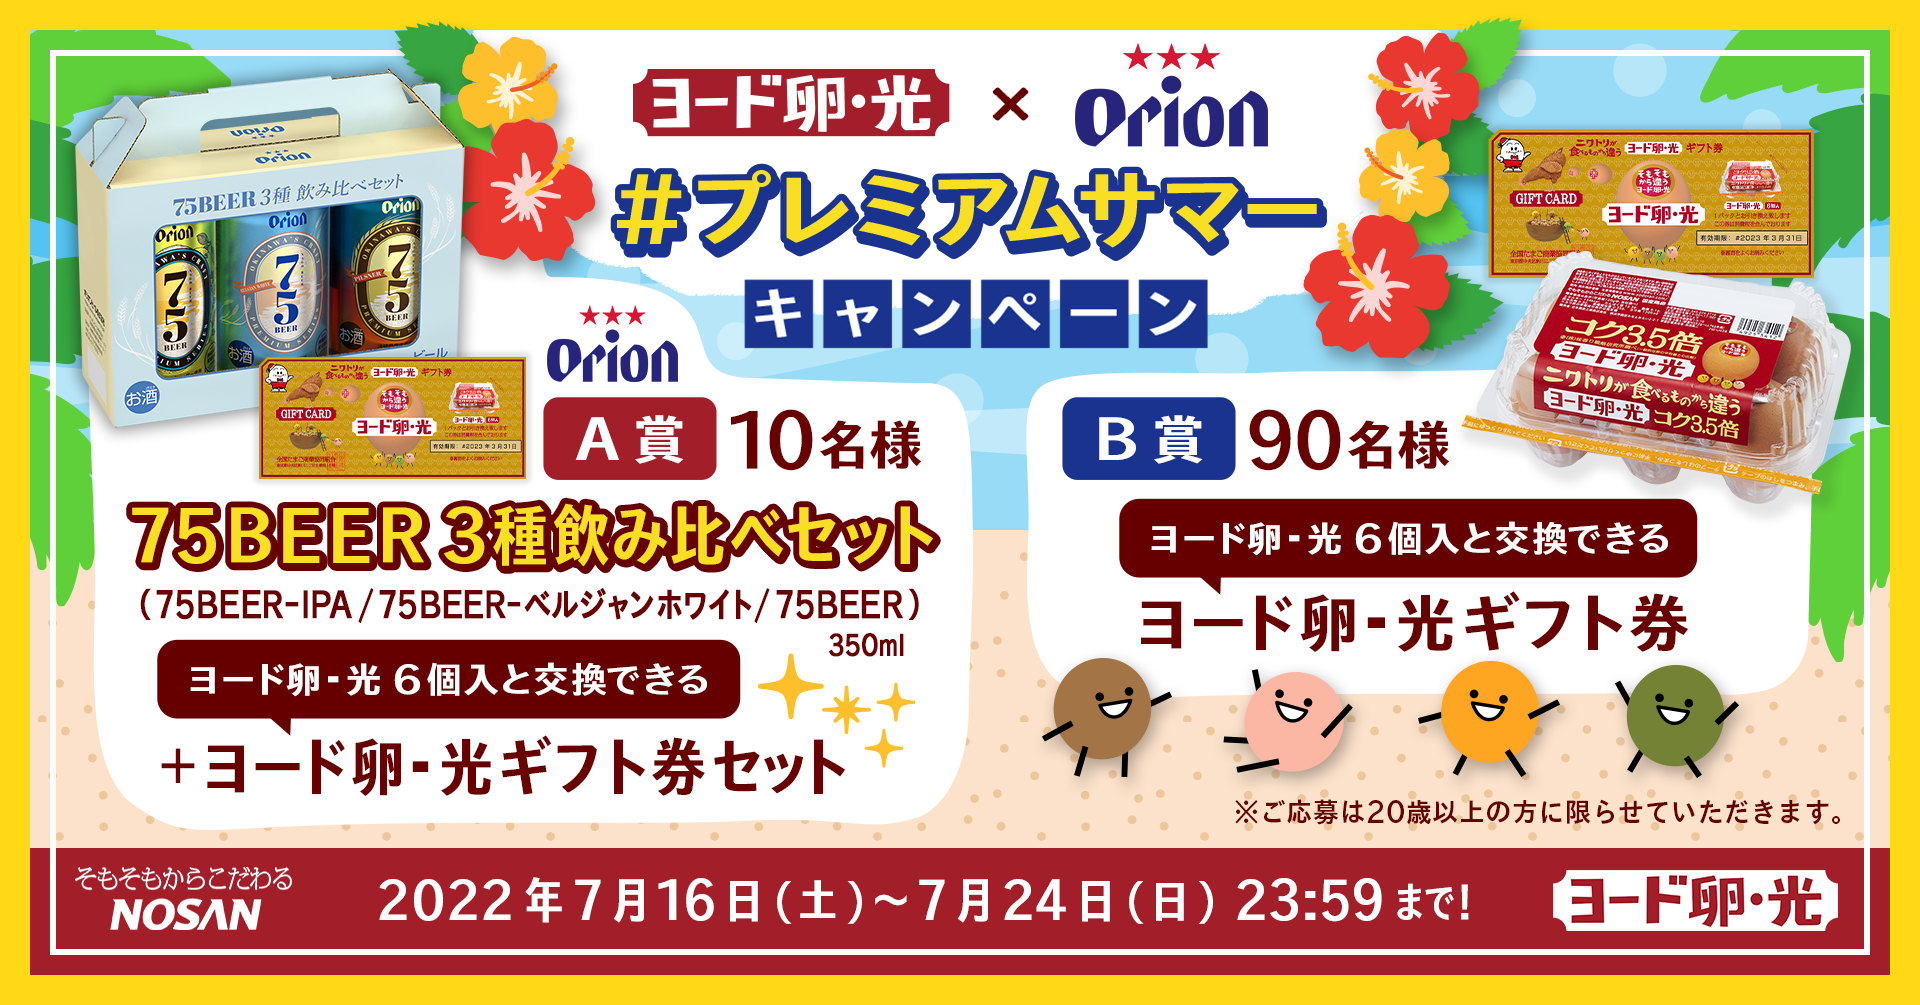 南大阪の古着イベント今年も9月18日(日)に開催　
「ミクフェス2022～ふるぎとごはん～」　
古着、フード、ハンドメイド、ワークショップなど全28組が出店